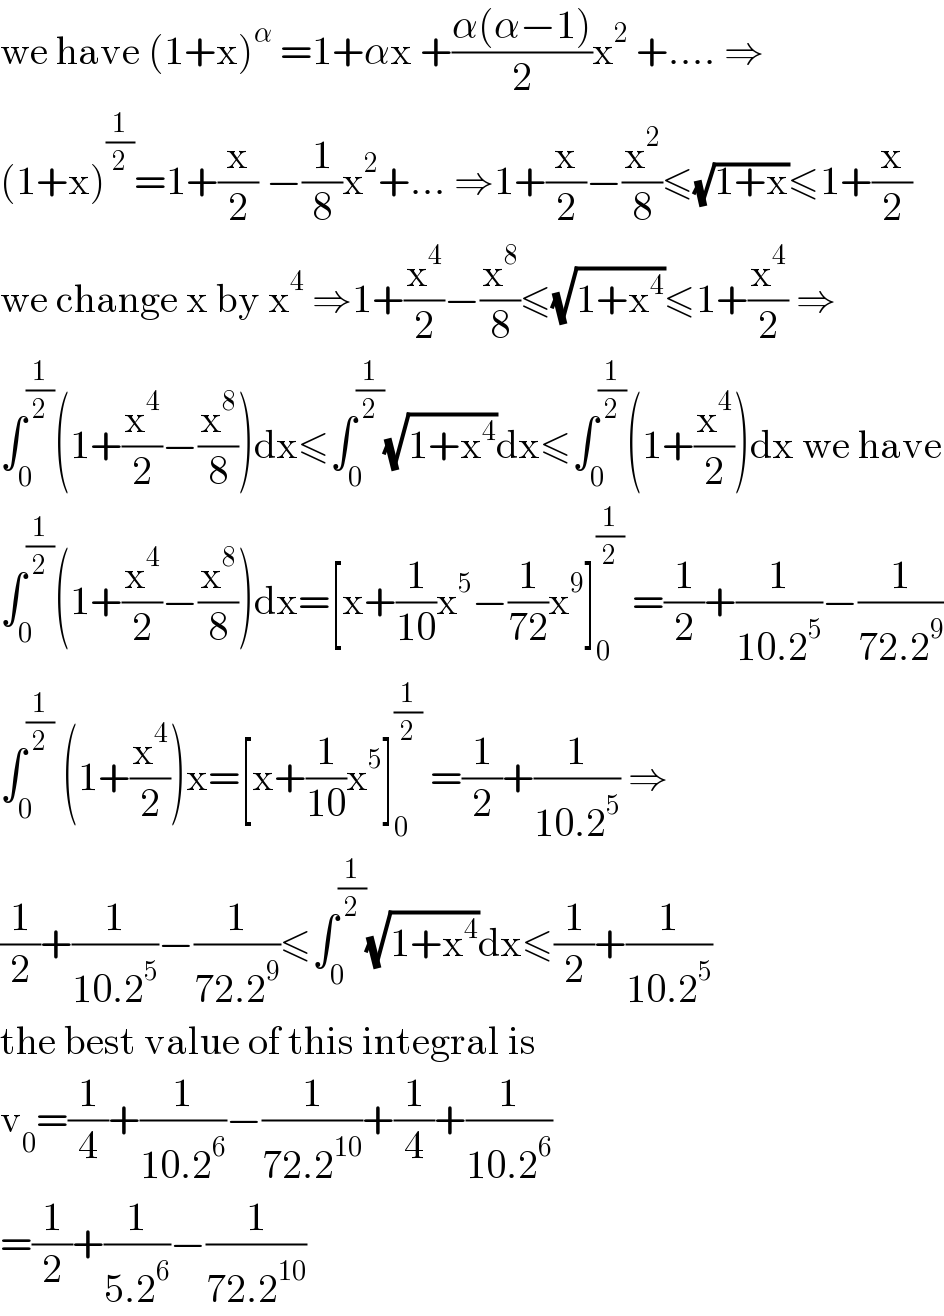 we have (1+x)^α  =1+αx +((α(α−1))/2)x^2  +.... ⇒  (1+x)^(1/2) =1+(x/2) −(1/8)x^2 +... ⇒1+(x/2)−(x^2 /8)≤(√(1+x))≤1+(x/2)  we change x by x^4  ⇒1+(x^4 /2)−(x^8 /8)≤(√(1+x^4 ))≤1+(x^4 /2) ⇒  ∫_0 ^(1/2) (1+(x^4 /2)−(x^8 /8))dx≤∫_0 ^(1/2) (√(1+x^4 ))dx≤∫_0 ^(1/2) (1+(x^4 /2))dx we have  ∫_0 ^(1/2) (1+(x^4 /2)−(x^8 /8))dx=[x+(1/(10))x^5 −(1/(72))x^9 ]_0 ^(1/2)  =(1/2)+(1/(10.2^5 ))−(1/(72.2^9 ))  ∫_0 ^(1/2)  (1+(x^4 /2))x=[x+(1/(10))x^5 ]_0 ^(1/2)  =(1/2)+(1/(10.2^5 )) ⇒  (1/2)+(1/(10.2^5 ))−(1/(72.2^9 ))≤∫_0 ^(1/2) (√(1+x^4 ))dx≤(1/2)+(1/(10.2^5 ))  the best value of this integral is  v_0 =(1/4)+(1/(10.2^6 ))−(1/(72.2^(10) ))+(1/4)+(1/(10.2^6 ))  =(1/2)+(1/(5.2^6 ))−(1/(72.2^(10) ))  